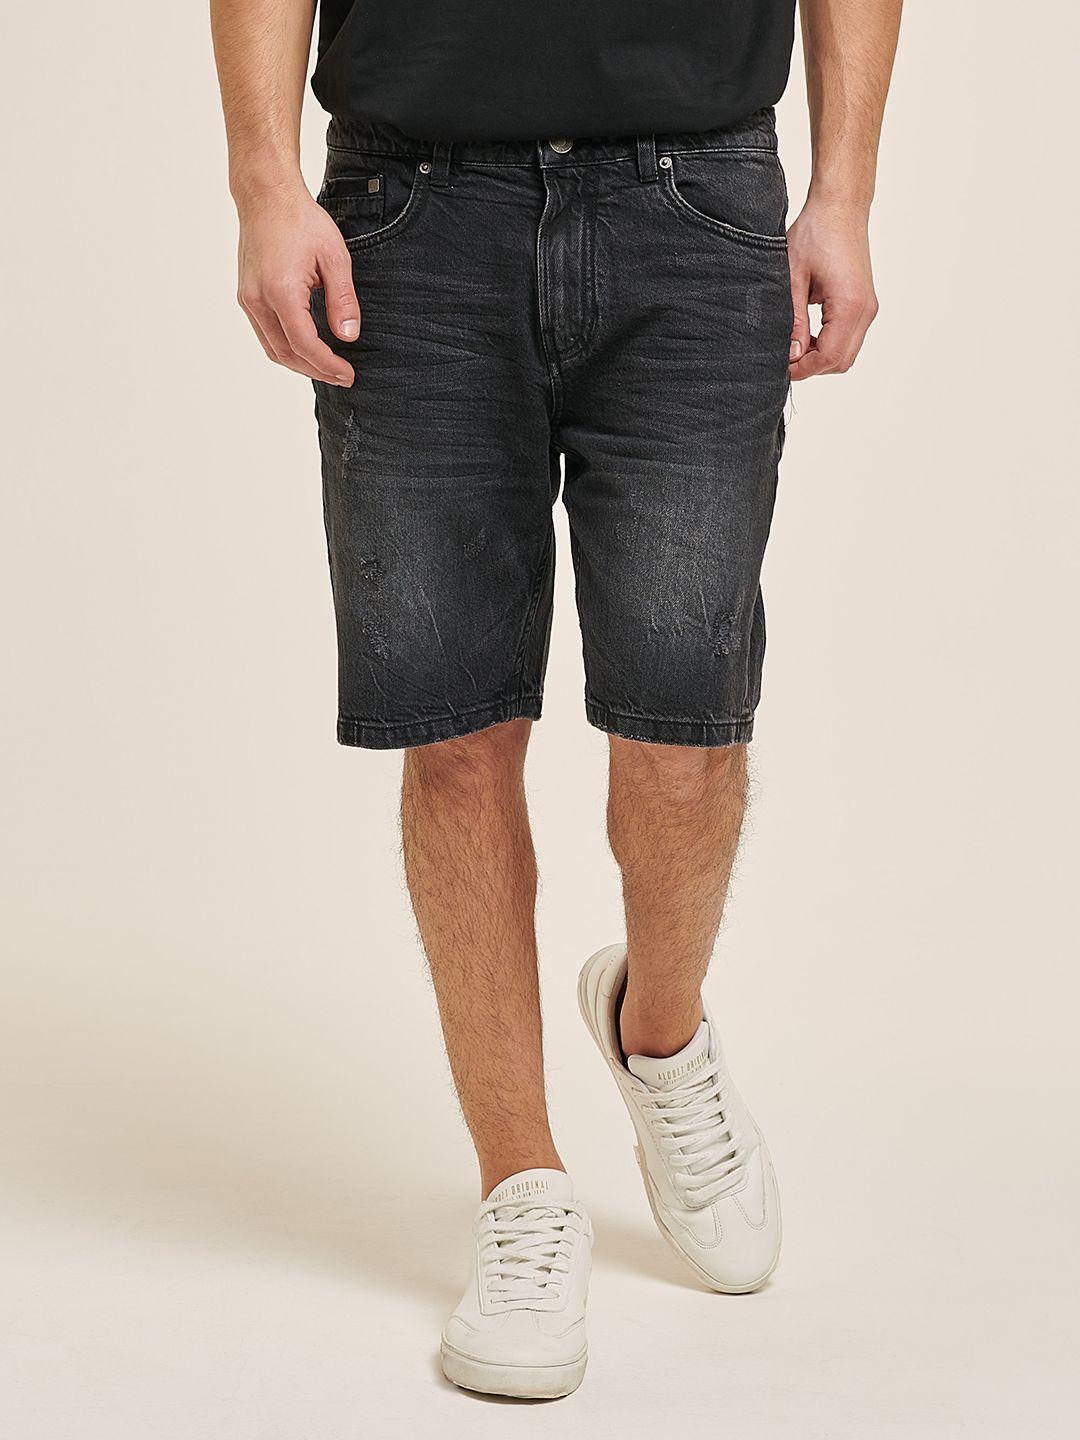 alcott-men-denim-shorts